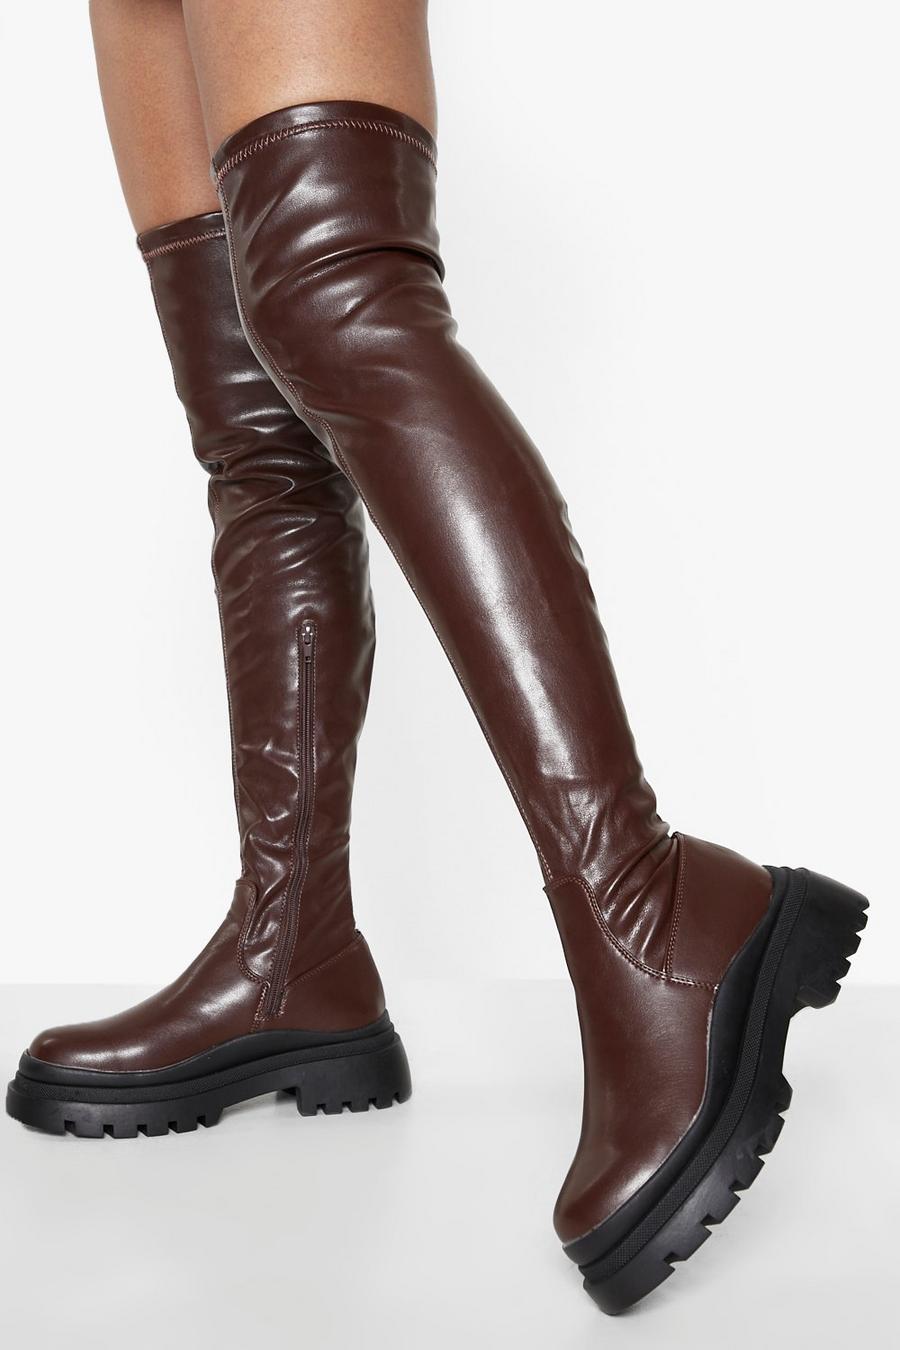 Overknee-Stiefel mit wellenförmiger Sohle, Schokoladenbraun brown